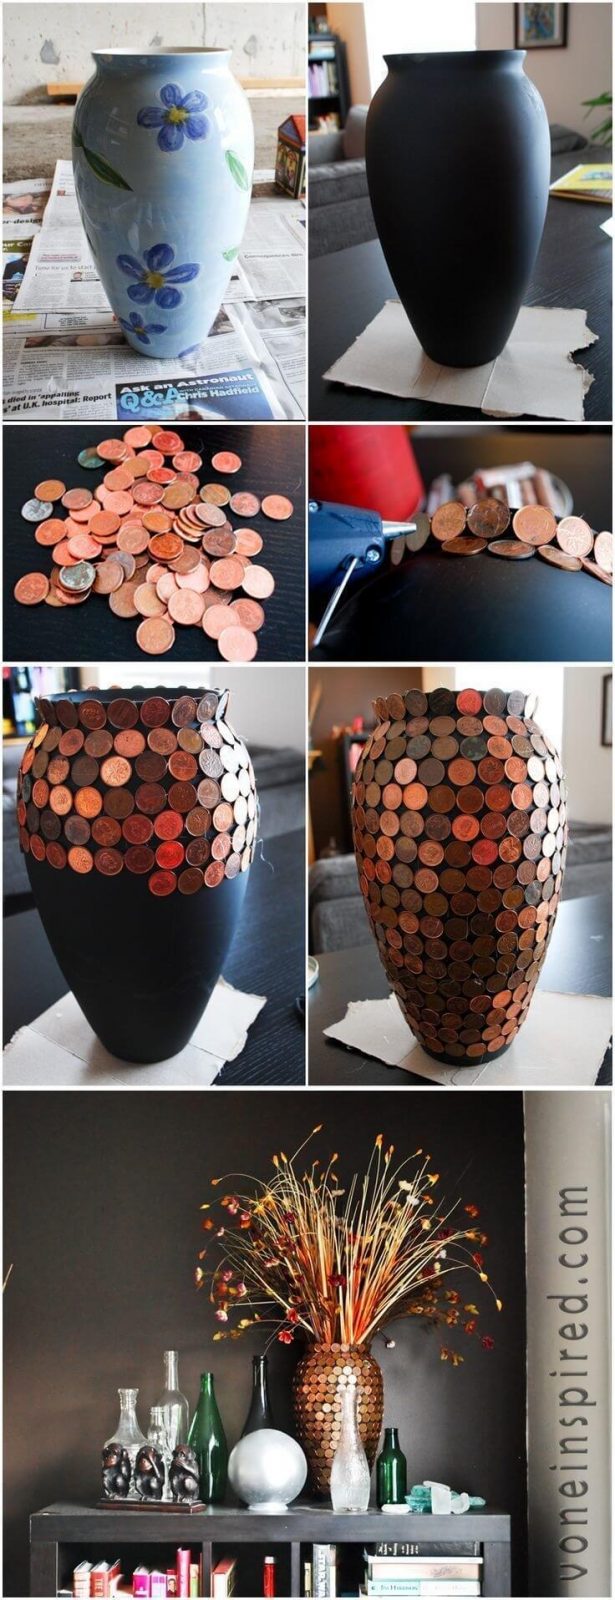 Blumenvase mit Münzen bekleben - DIY Bastelideen 